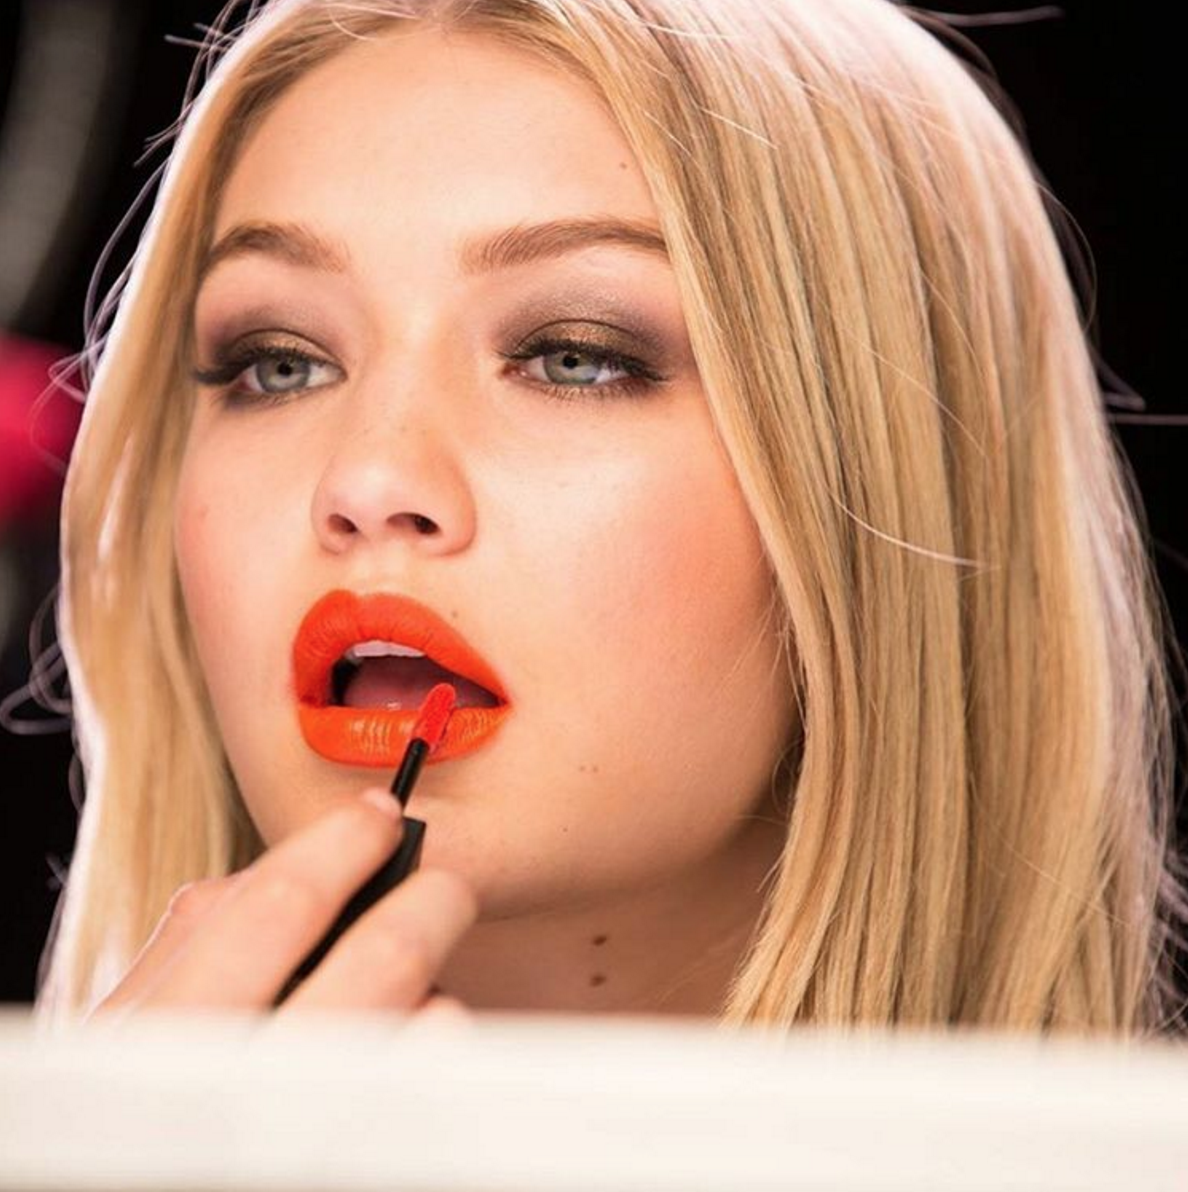 Los labios naranja son una de las tendencias de makeup más destacadas del 